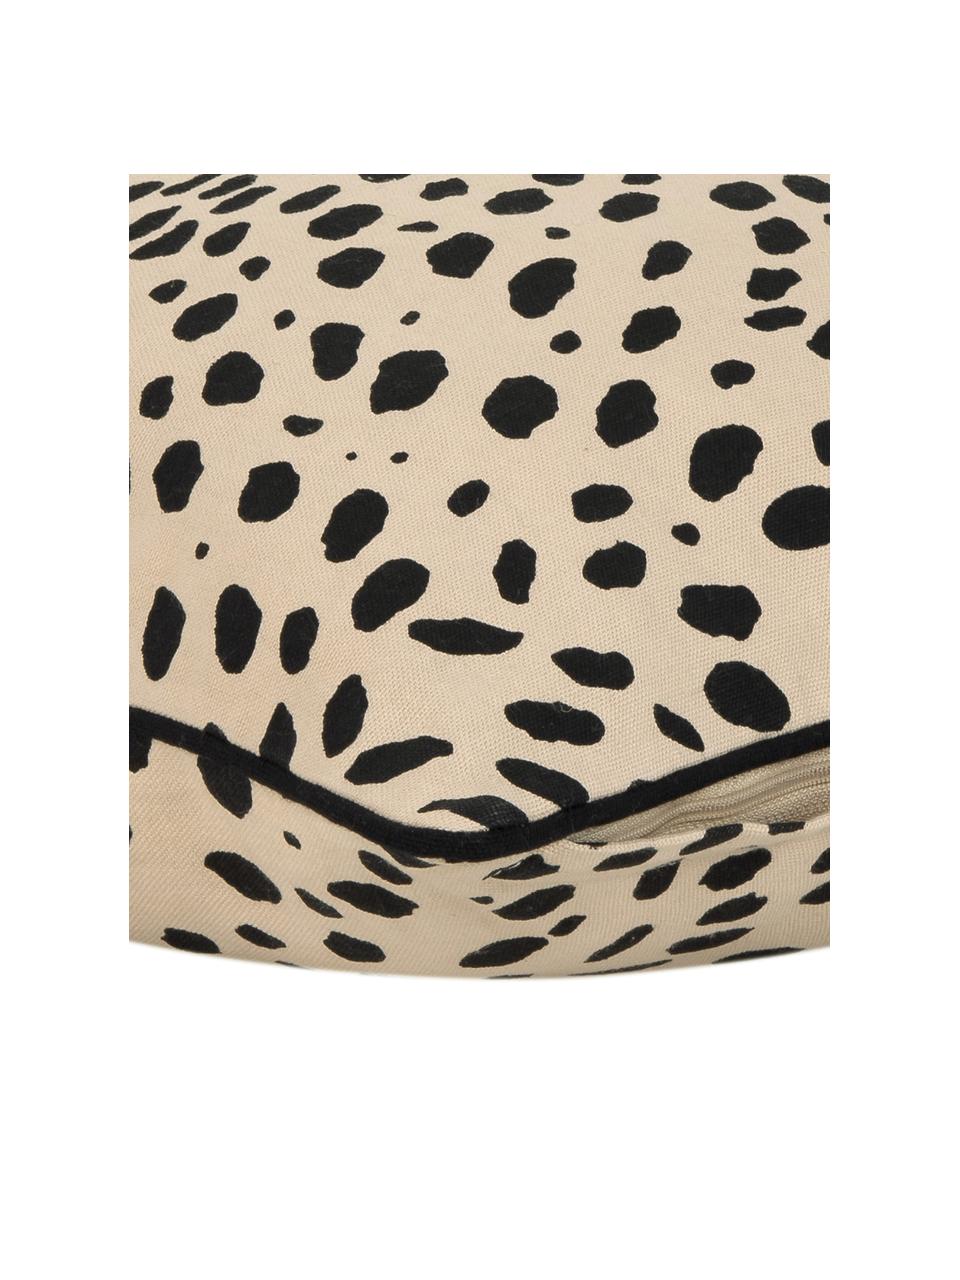 Kissenhülle Leopard mit schwarzem Keder, 100% Baumwolle, Beige, Schwarz, B 45 x L 45 cm